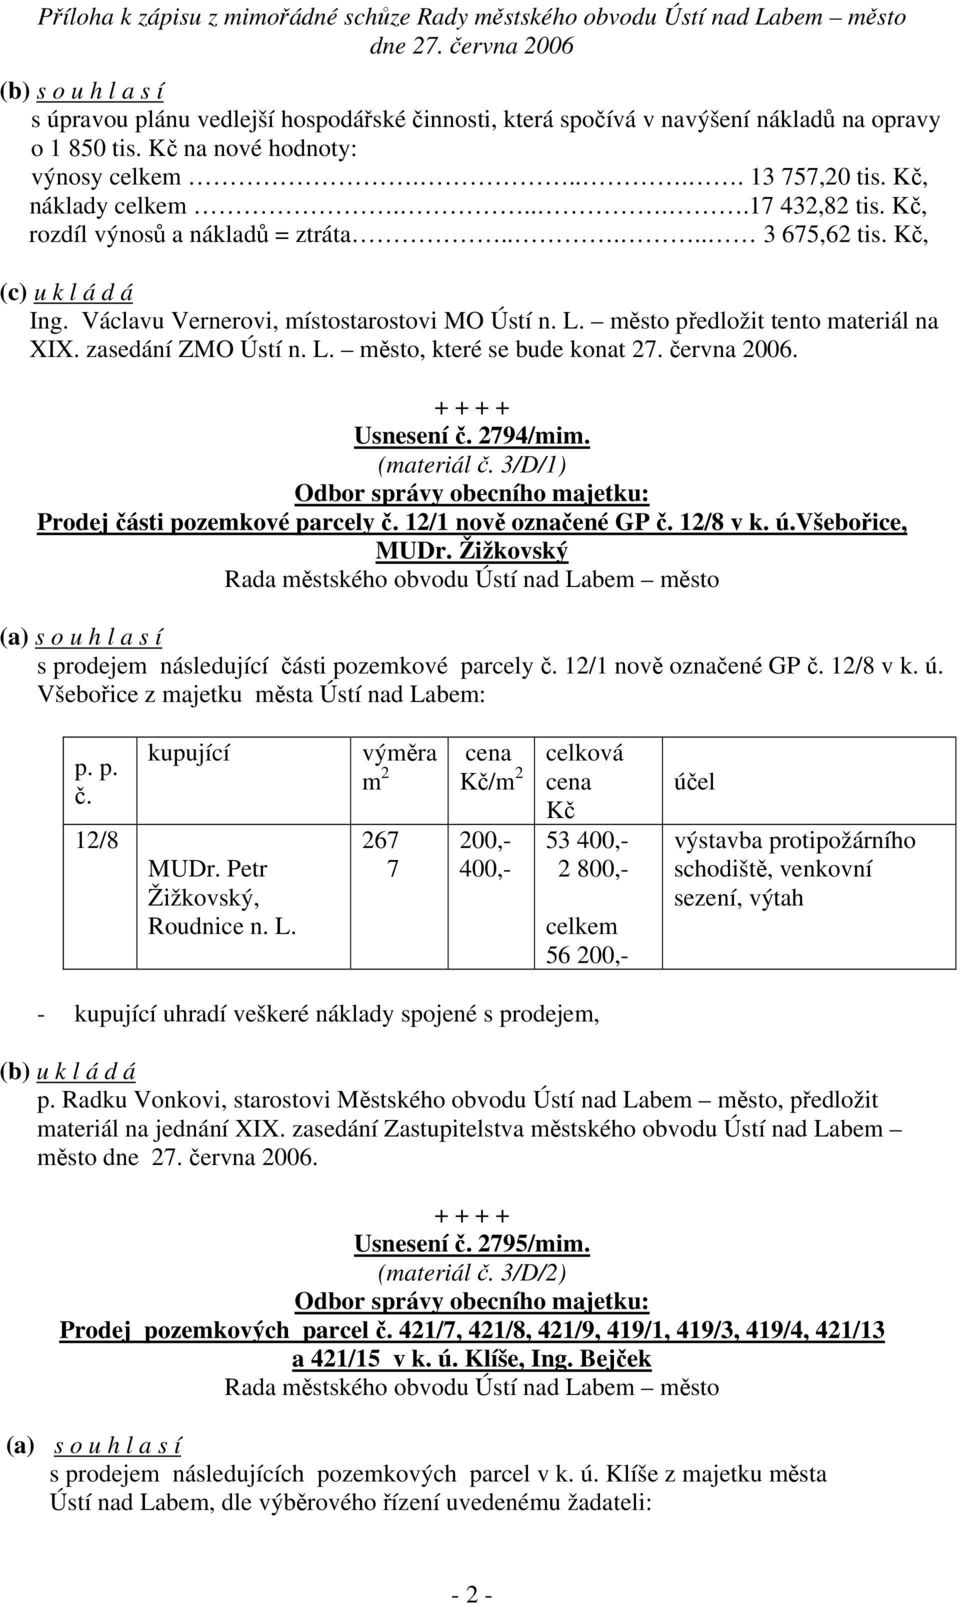 června 2006. Usnesení č. 2794/mim. (materiál č. 3/D/1) Prodej části pozemkové parcely č. 12/1 nově označené GP č. 12/8 v k. ú.všebořice, MUDr.